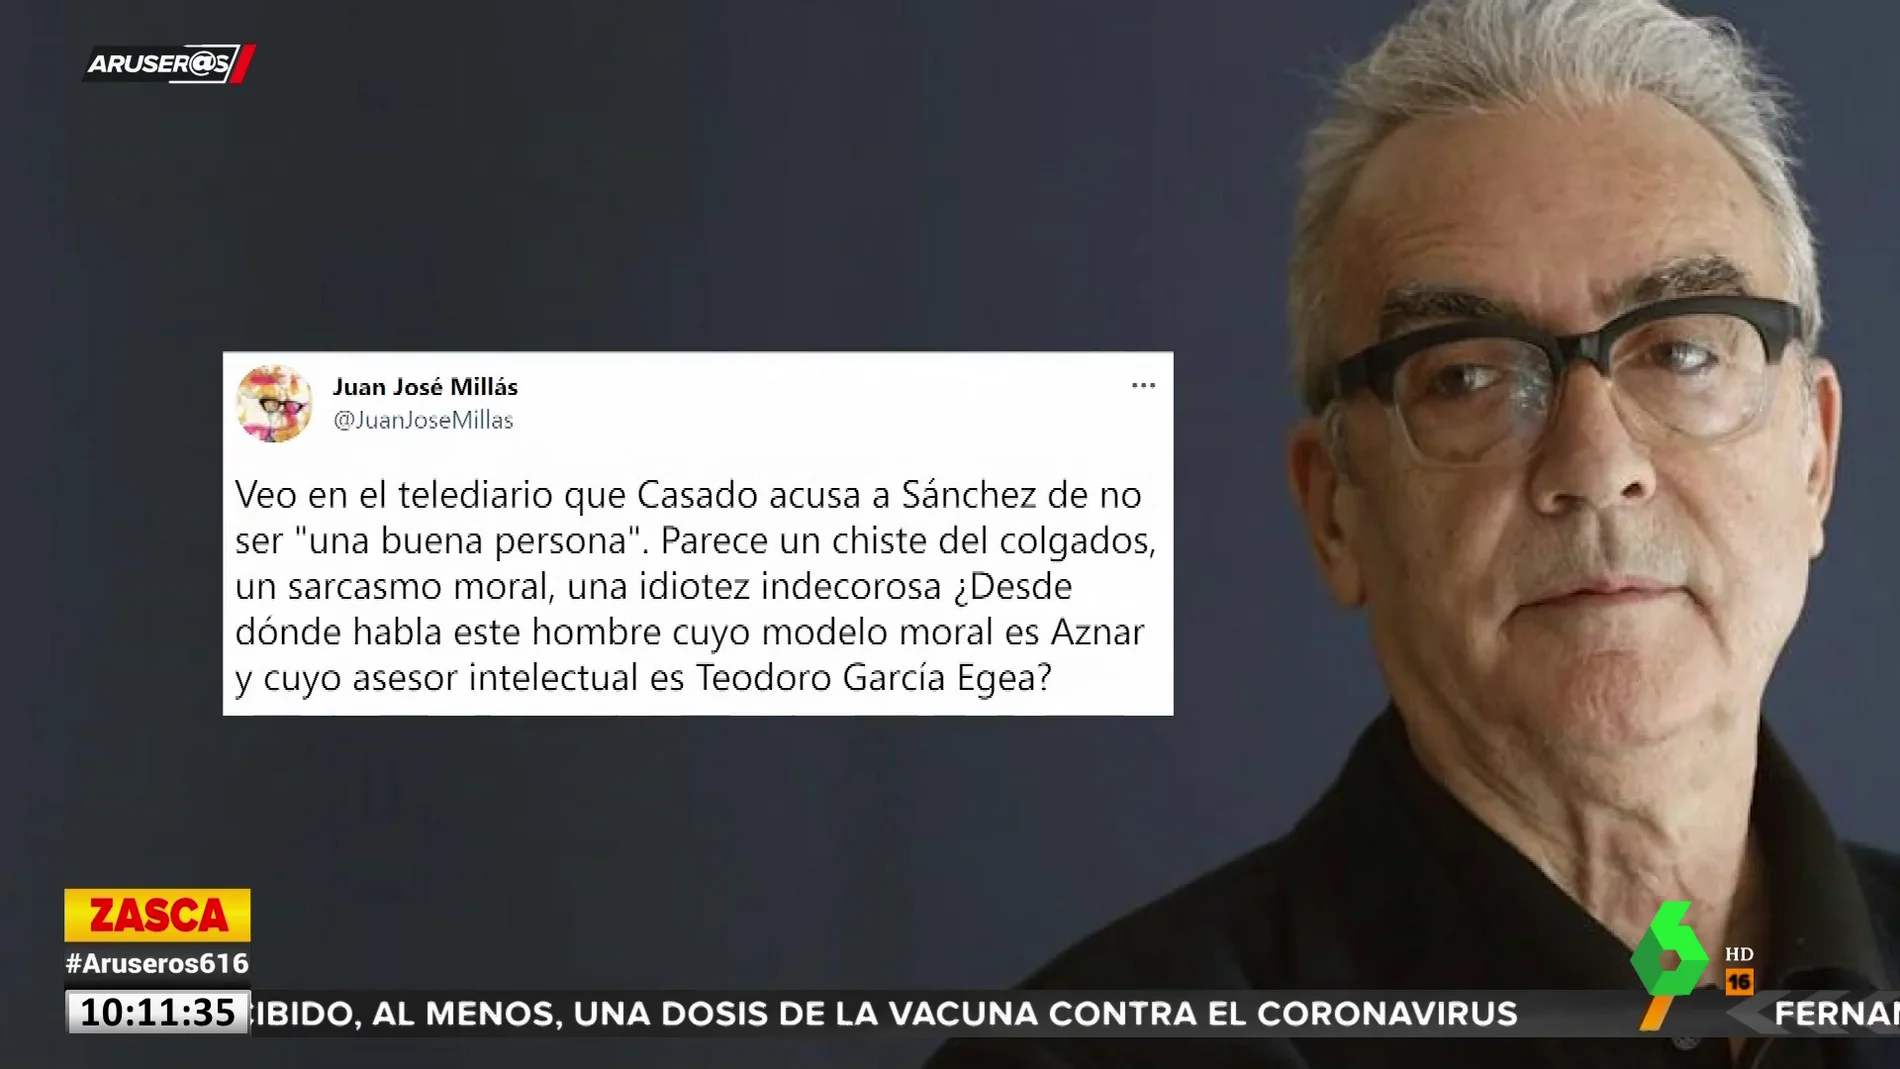 La réplica de Juan José Millás a Casado por acusar a Sánchez de no ser "buena persona": "Su modelo moral es Aznar"